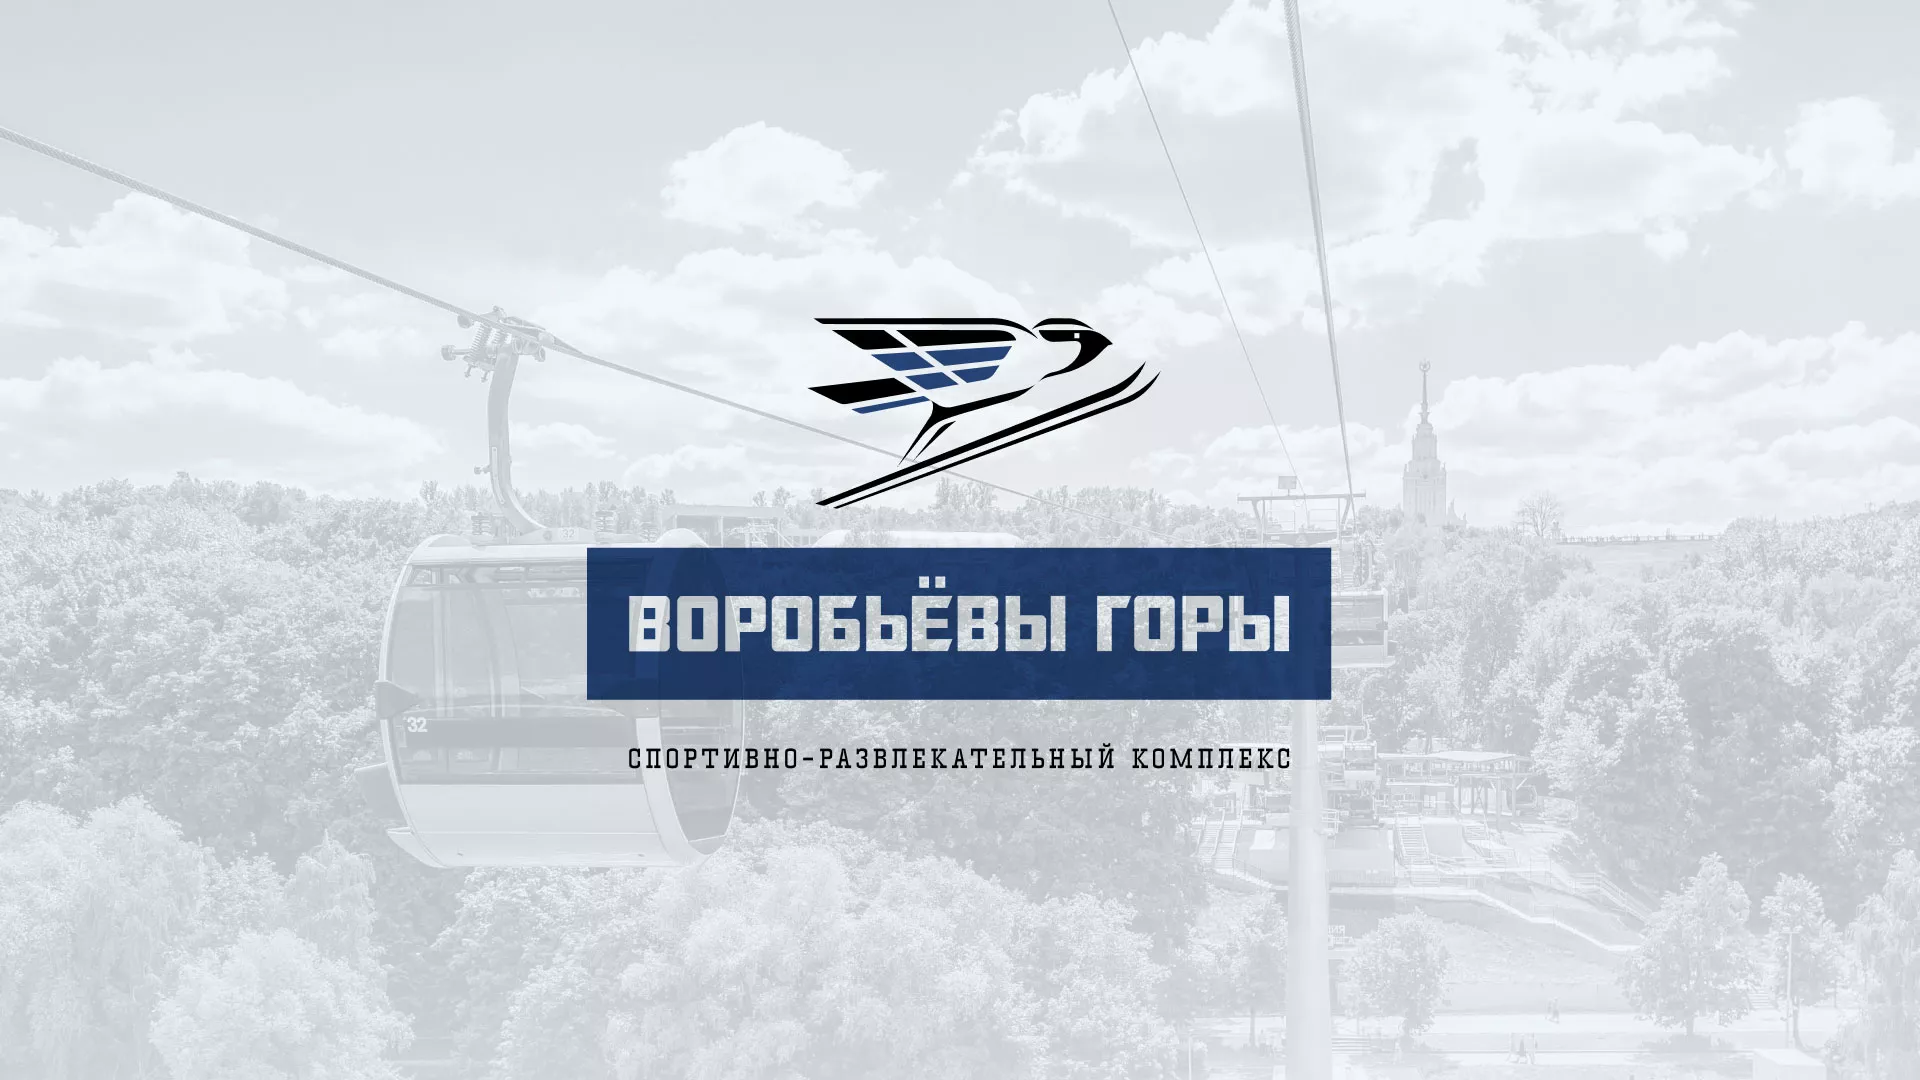 Разработка сайта в Снежногорске для спортивно-развлекательного комплекса «Воробьёвы горы»